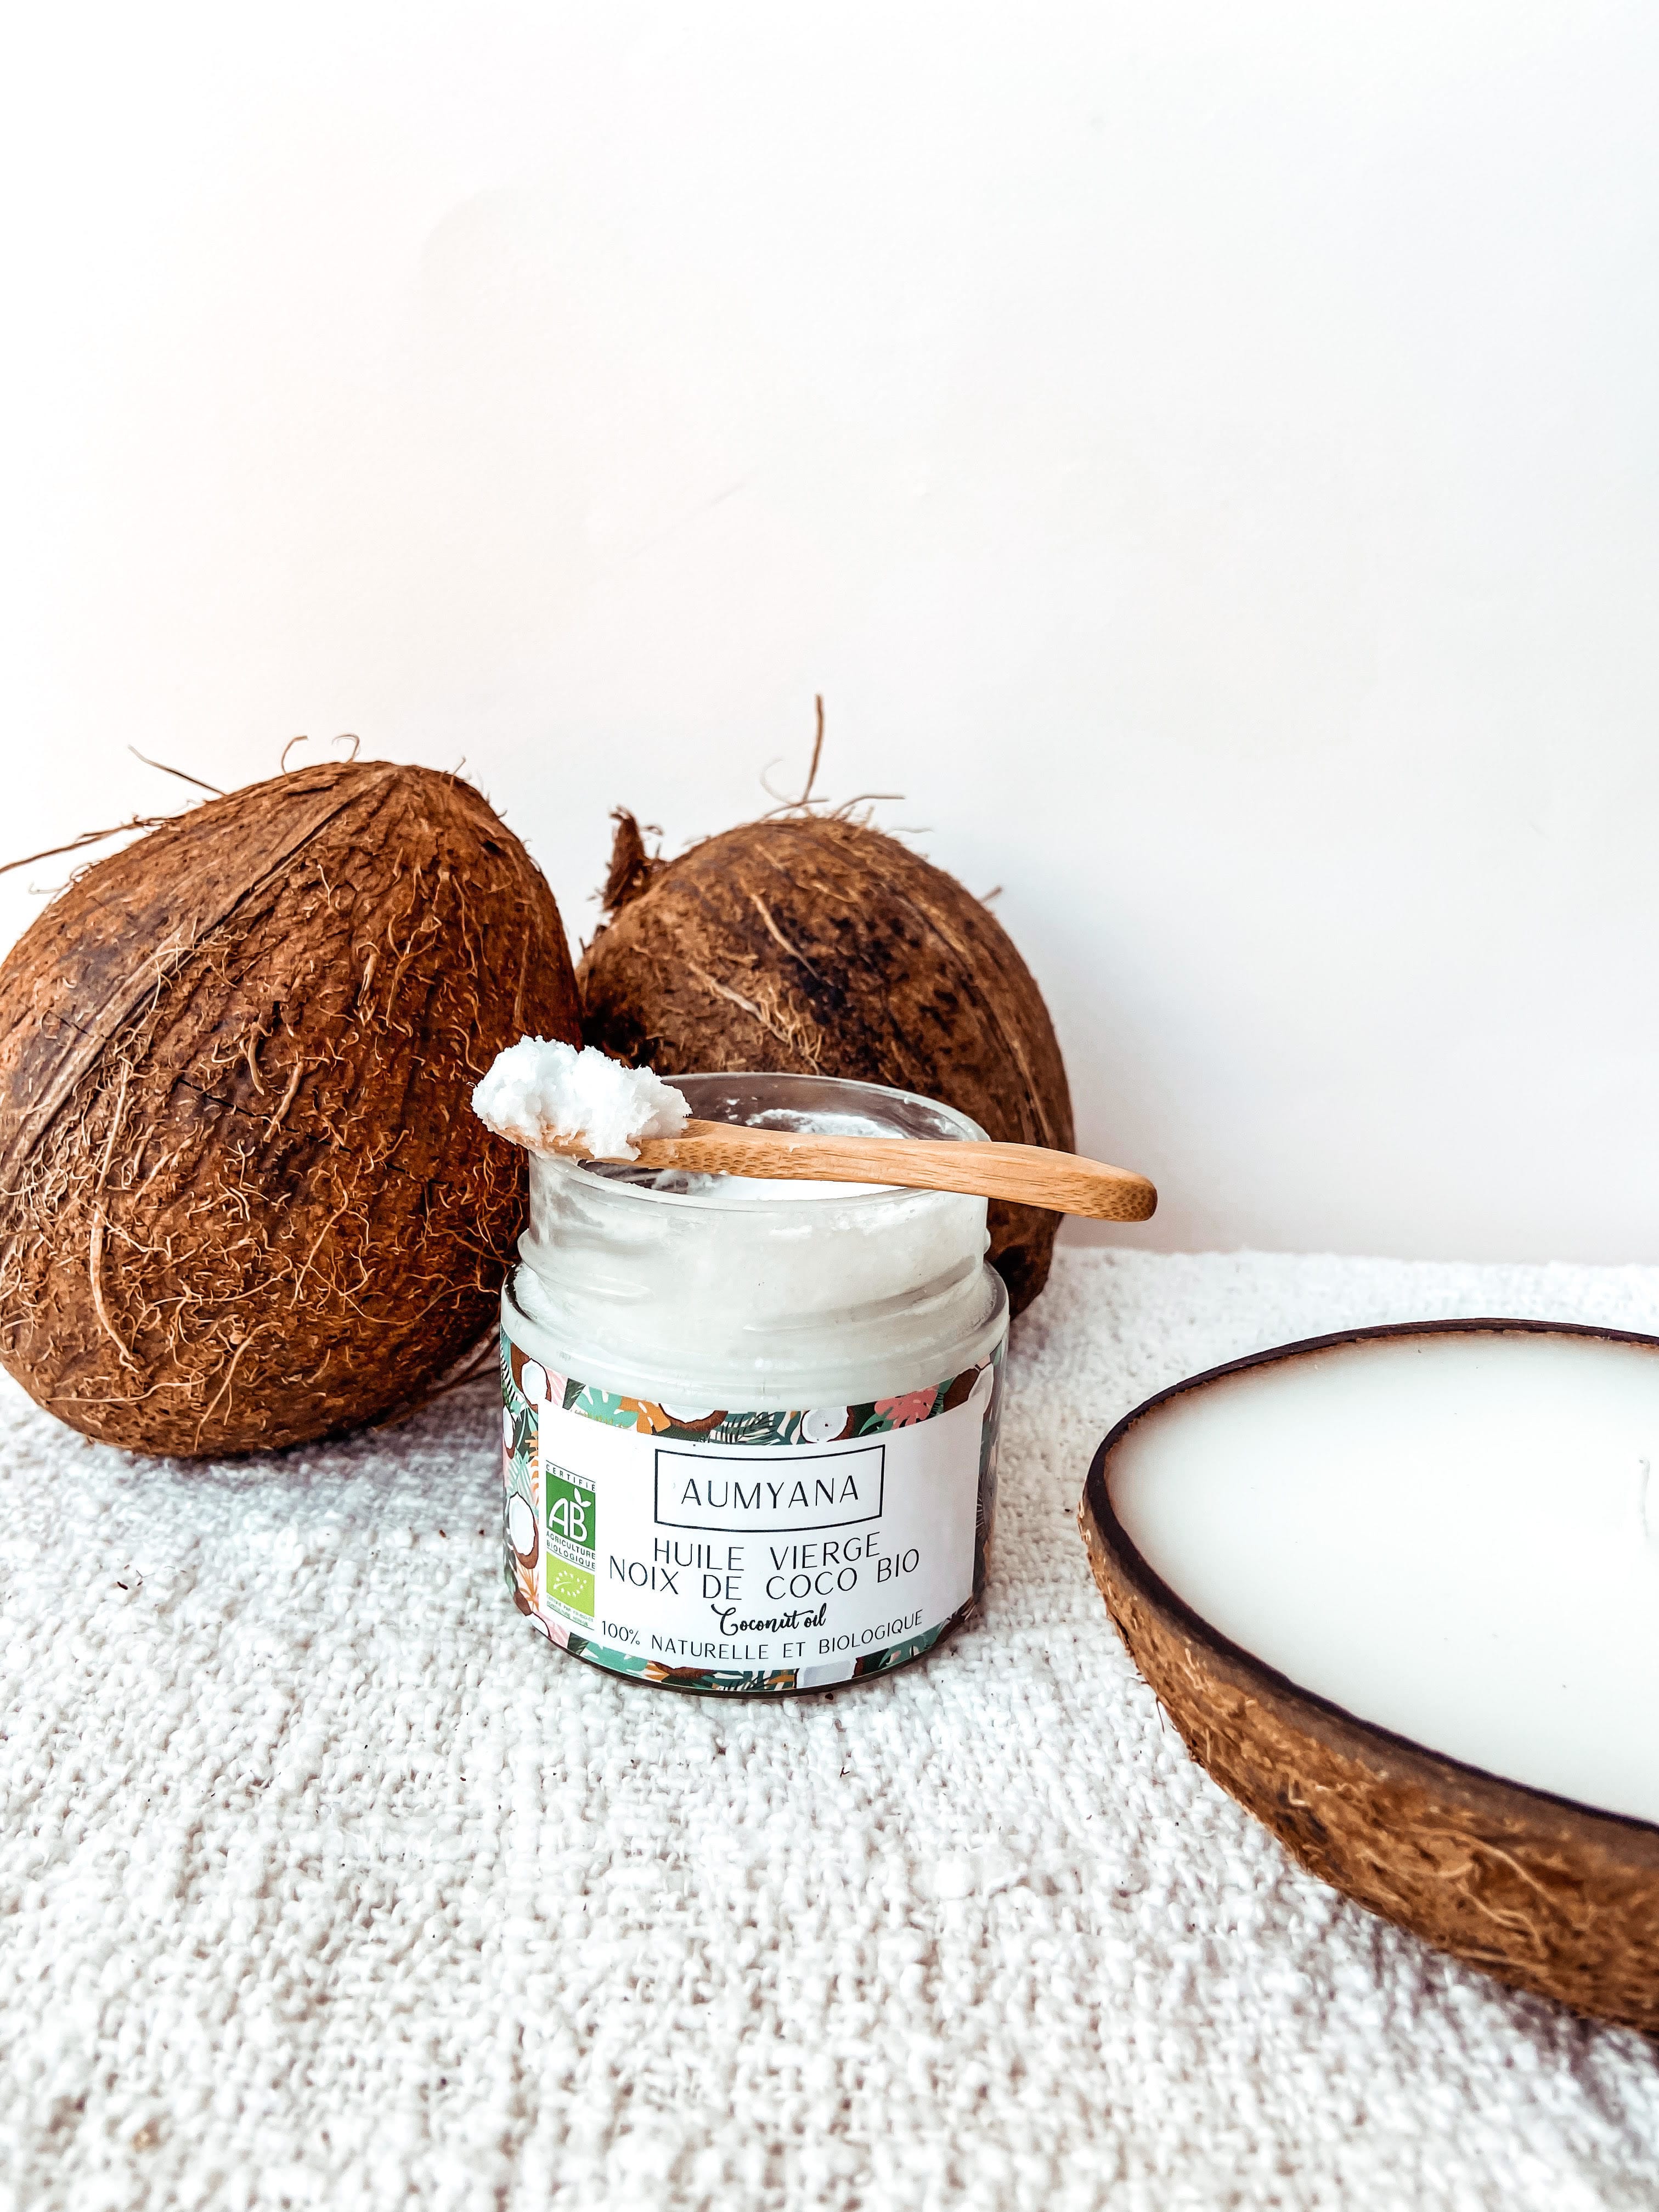 Comment utiliser de l'huile de coco pour les cheveux ? – Aumyana